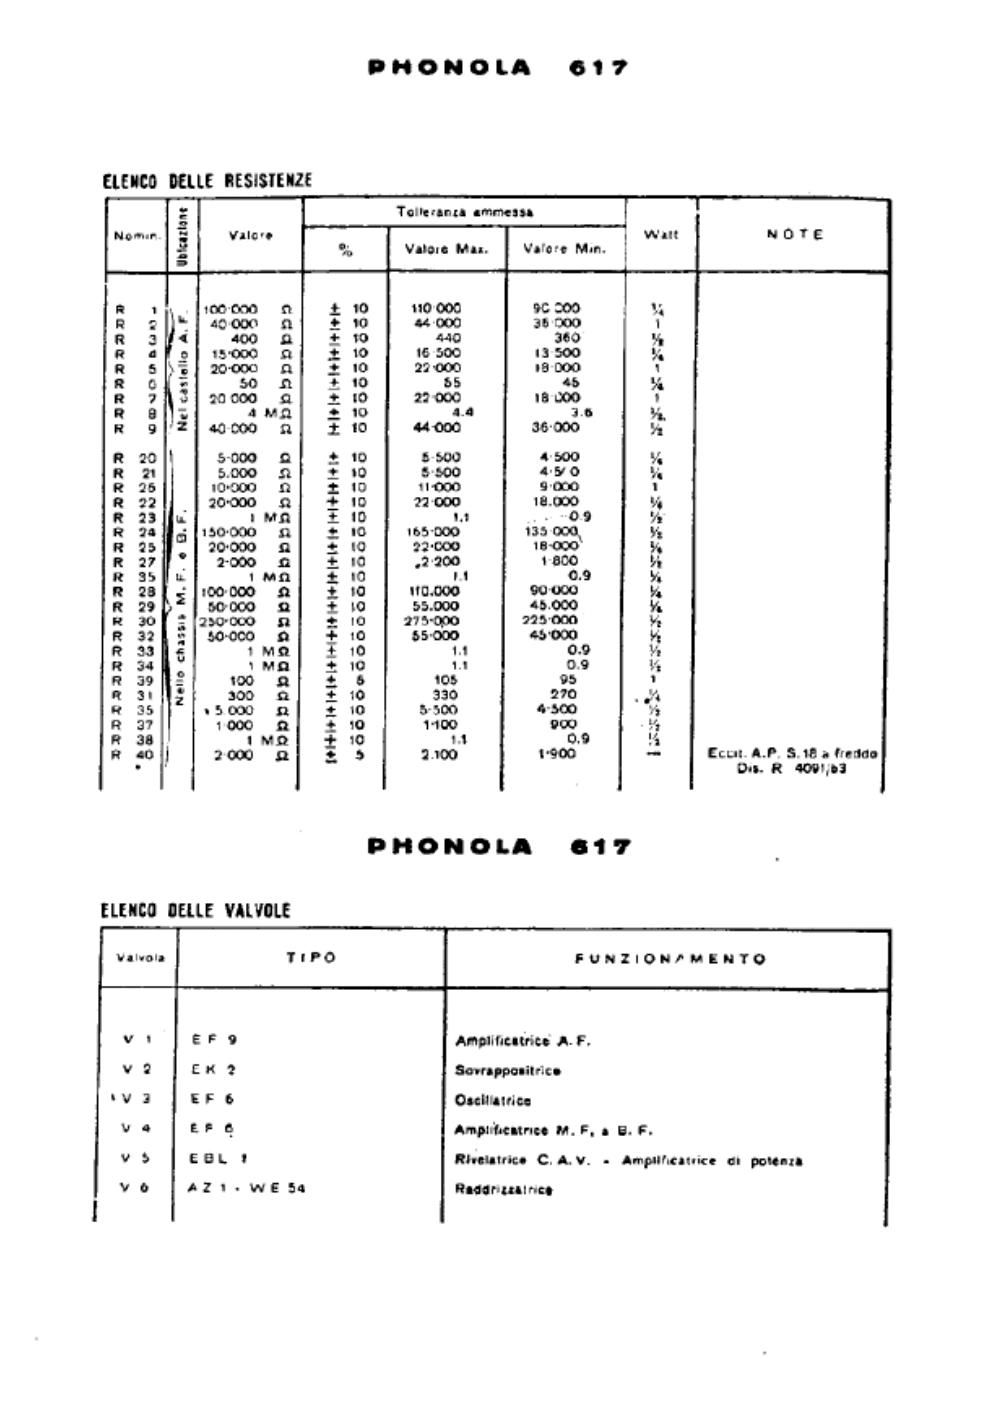 phonola 617 components ii